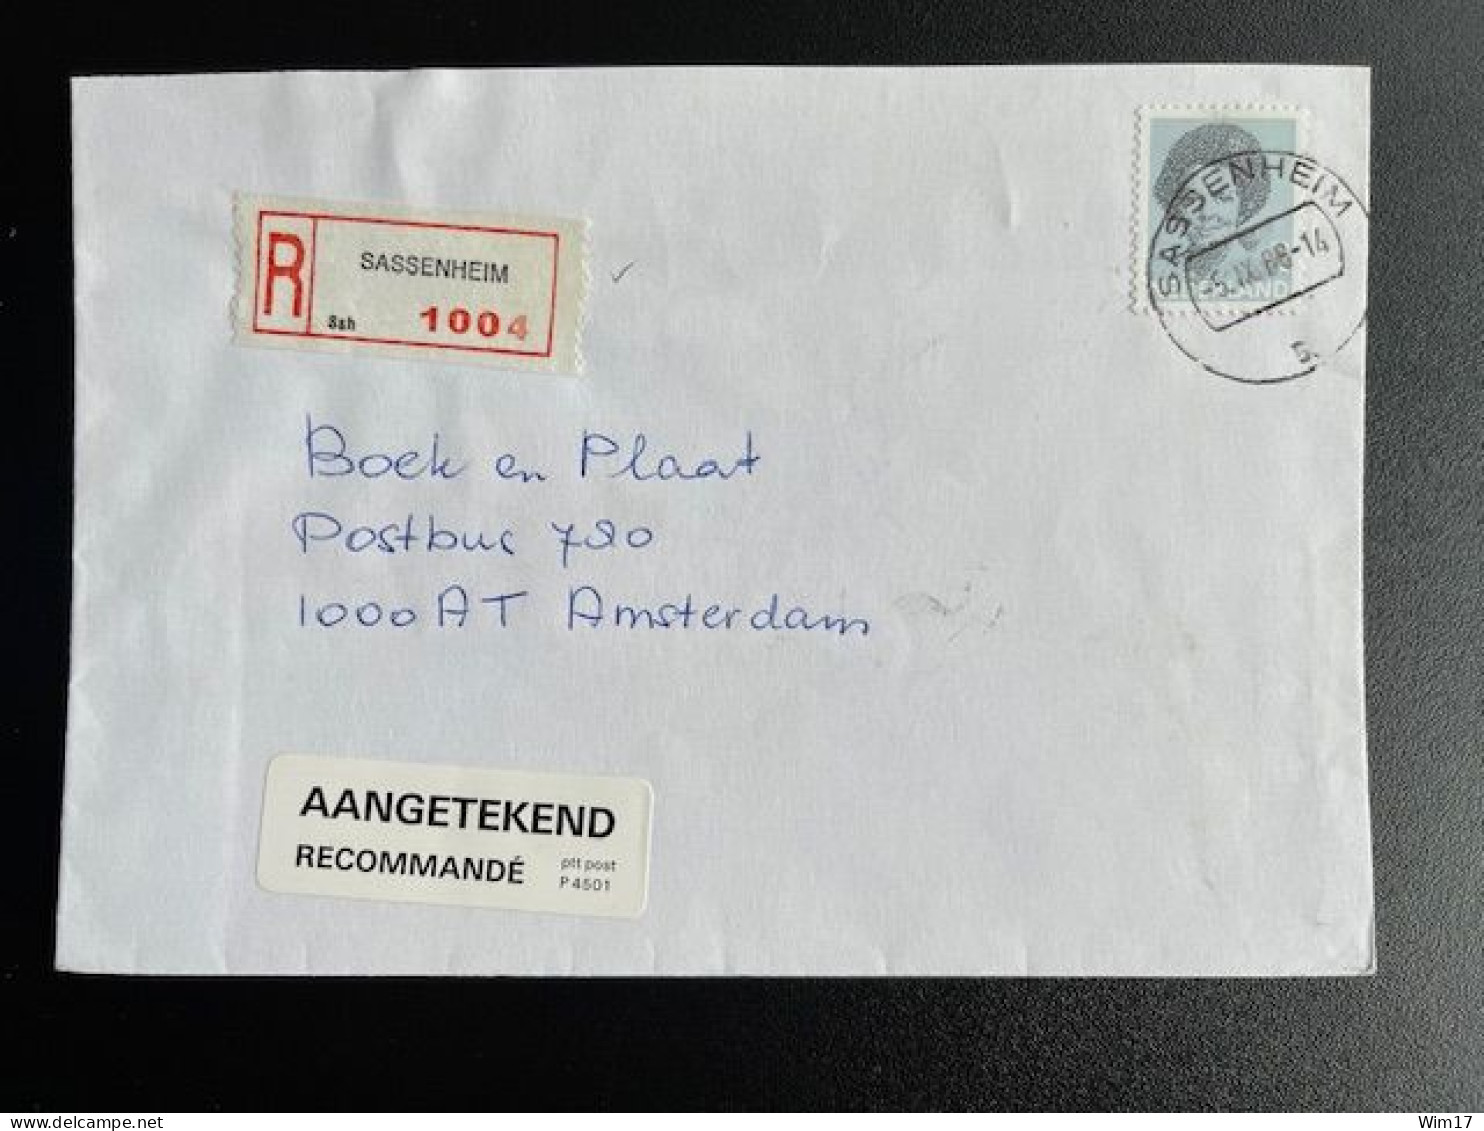 NETHERLANDS 1988 REGISTERED LETTER SASSENHEIM TO AMSTERDAM 05-09-1988 NEDERLAND AANGETEKEND - Briefe U. Dokumente